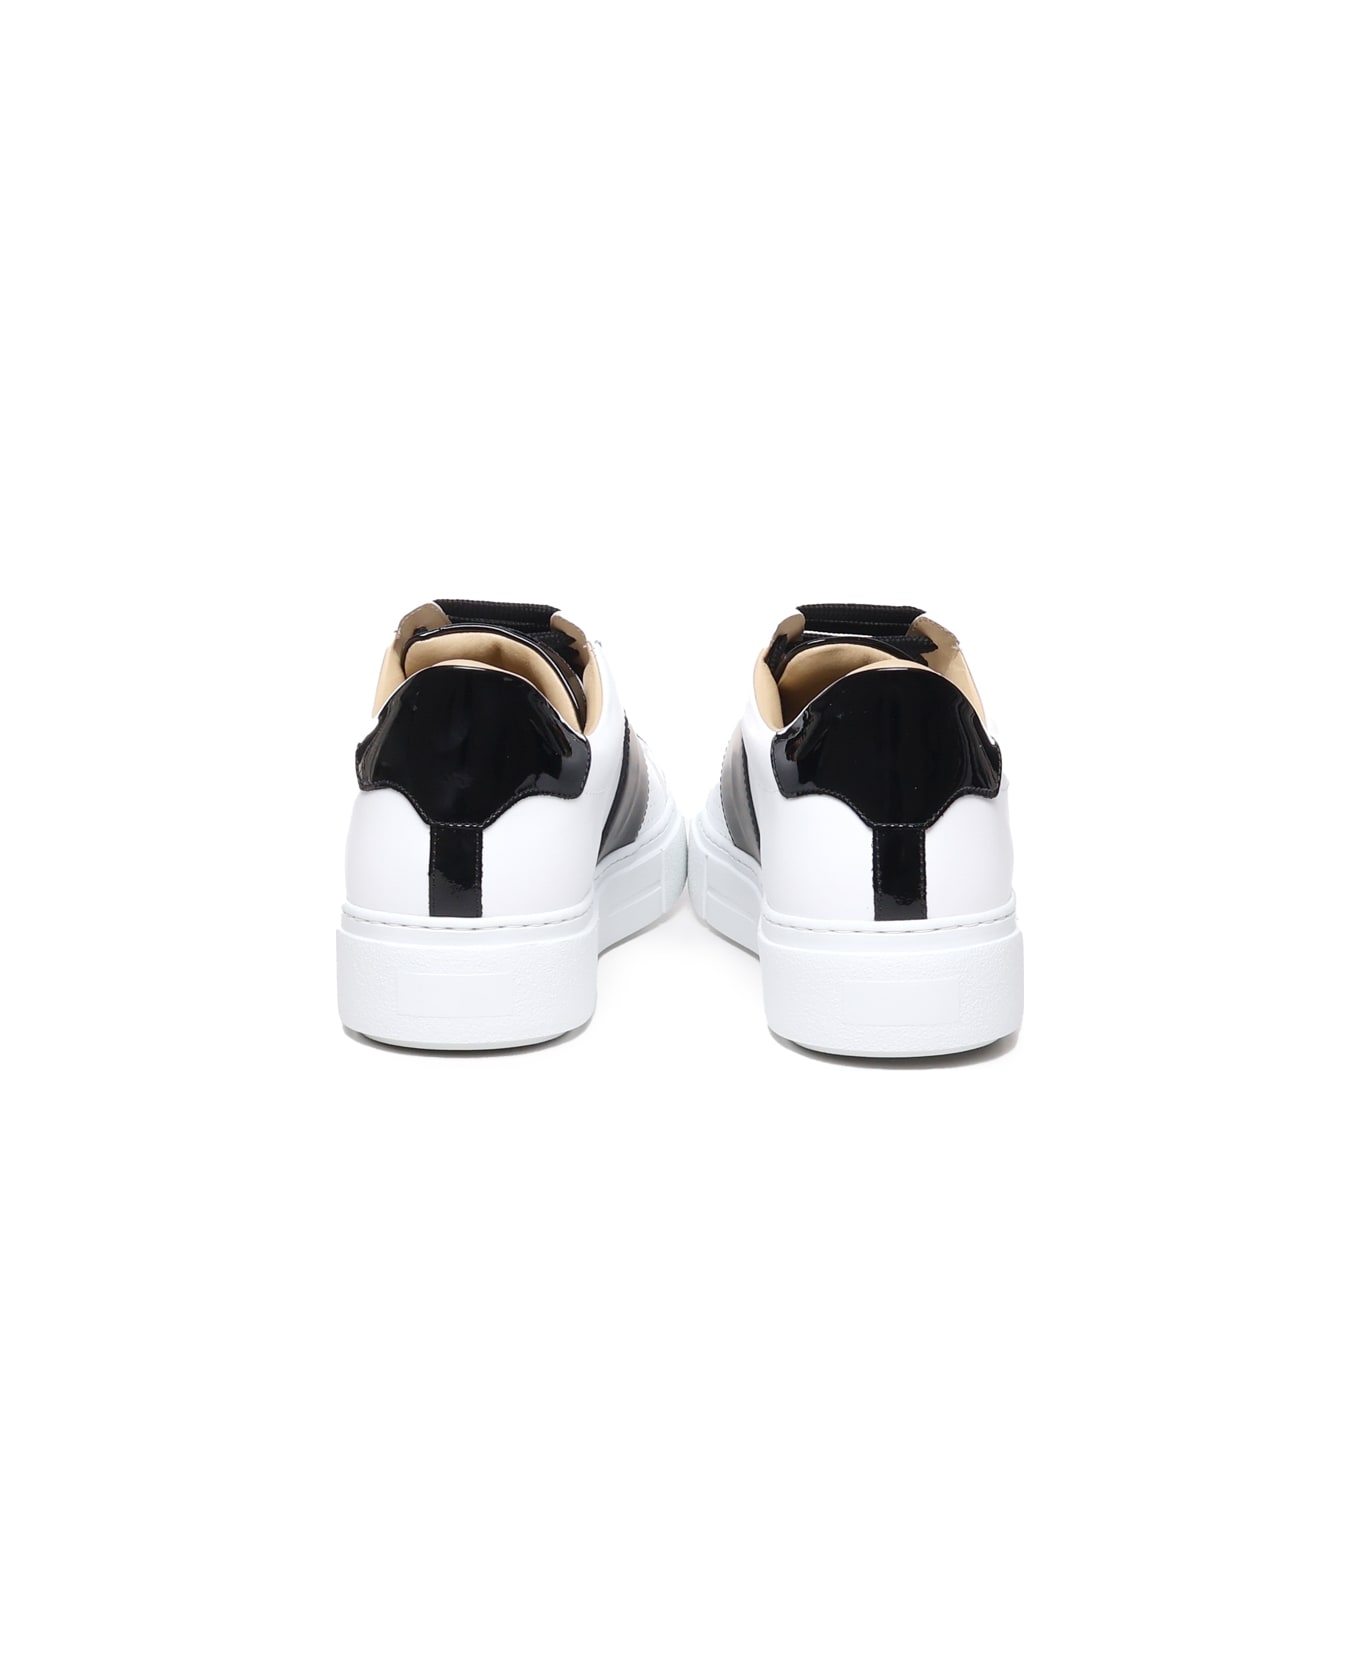 Philipp Plein Sneakers Pp In Calfskin - White / black スニーカー